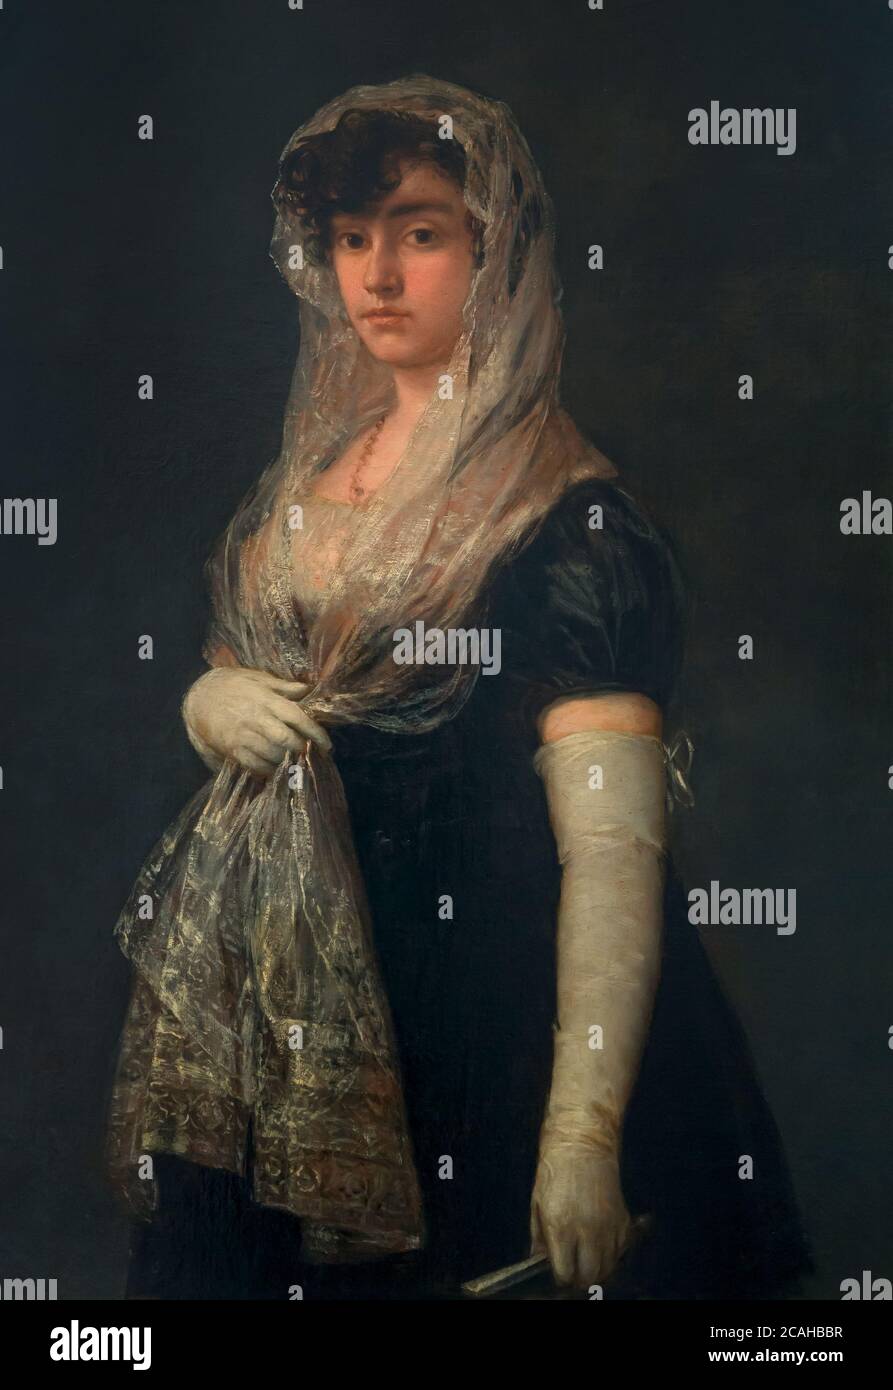 Jeune femme portant un Mantilla et une Basquina, Francisco de Goya, vers 1800-1805, National Gallery of Art, Washington DC, USA, Amérique du Nord Banque D'Images